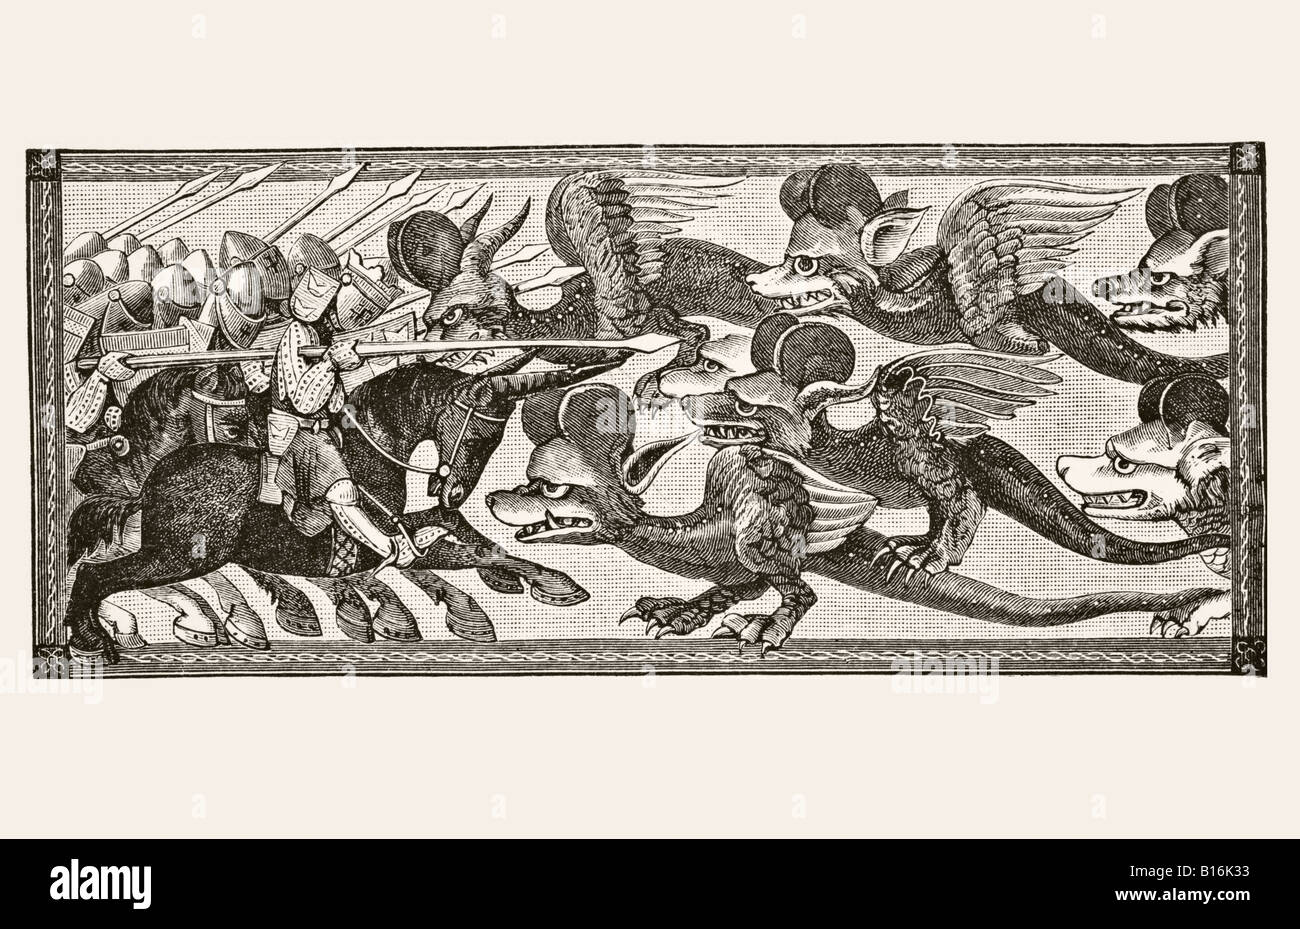 Comment Alexandre a combattu les Dragons avec des cornes de Sheeps sur leurs fronts. Banque D'Images